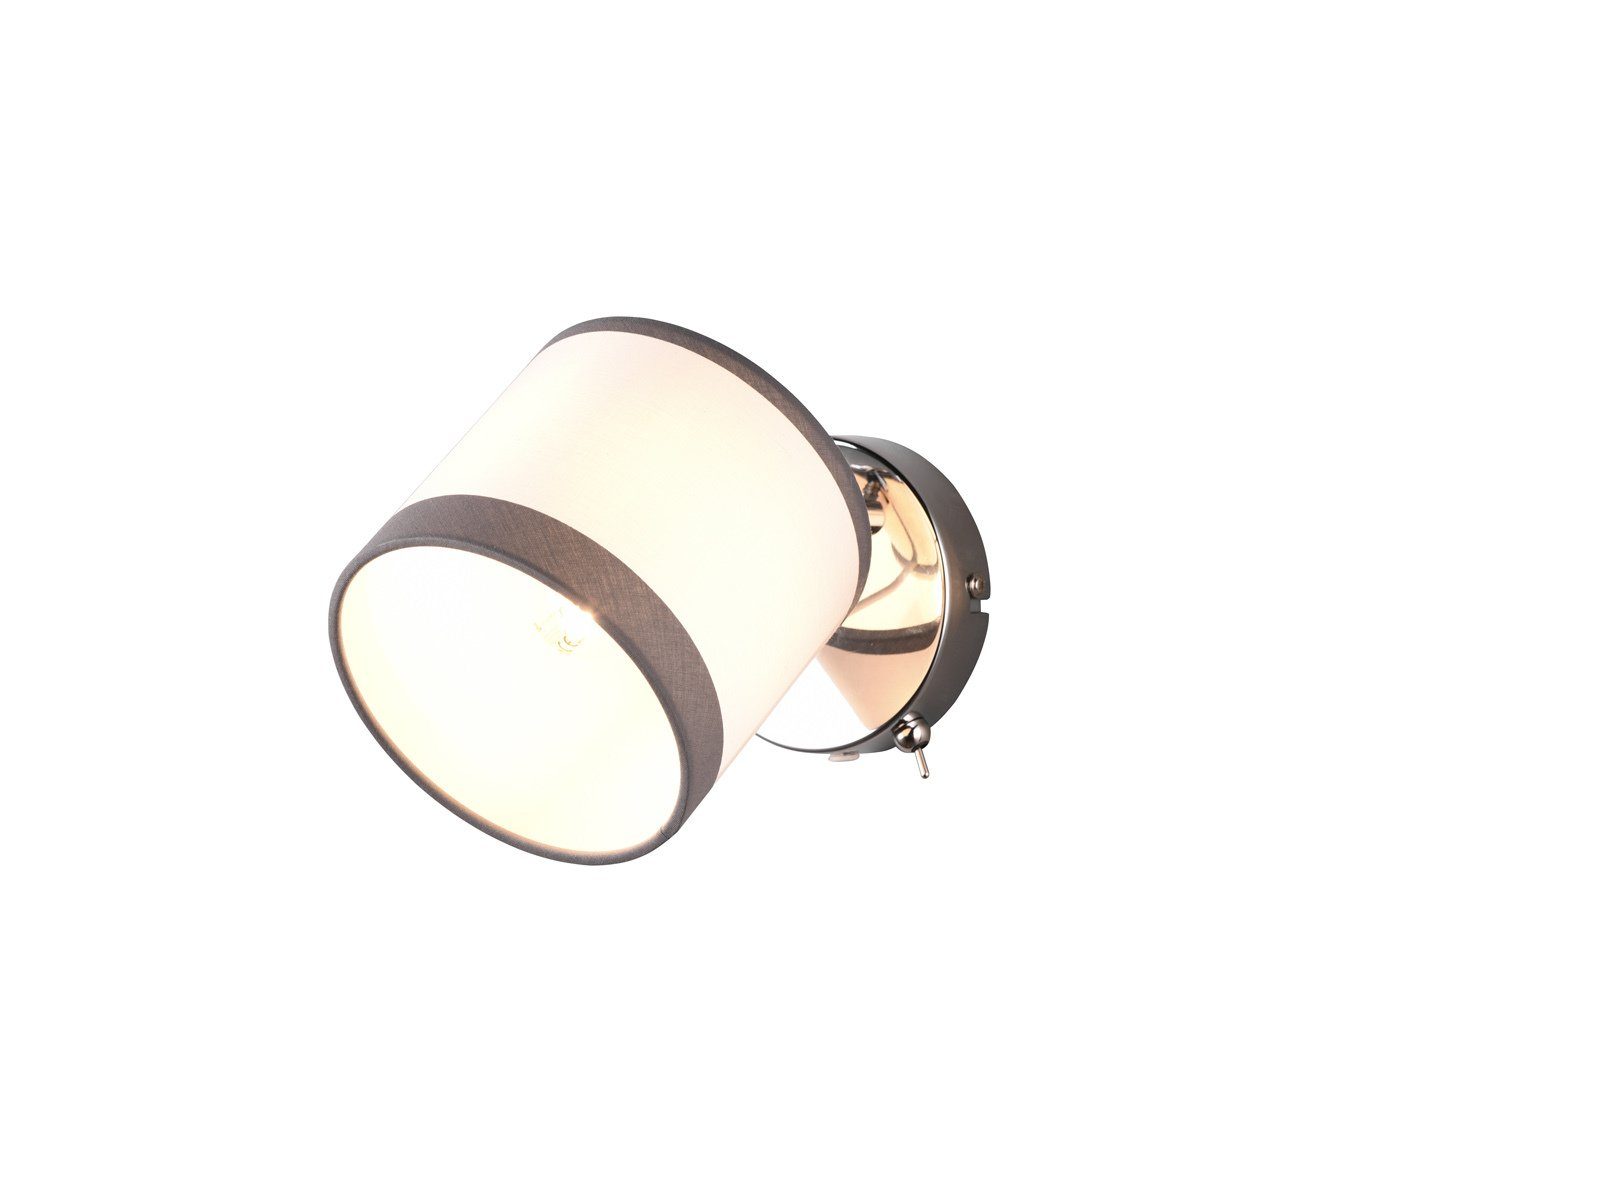 H LED warmweiß, Wandstrahler, meineWunschleuchte mit 21cm Leselampe LED innen, Weiß/Grau wechselbar, Wandlampe Schalter Wand, Nachttischlampe